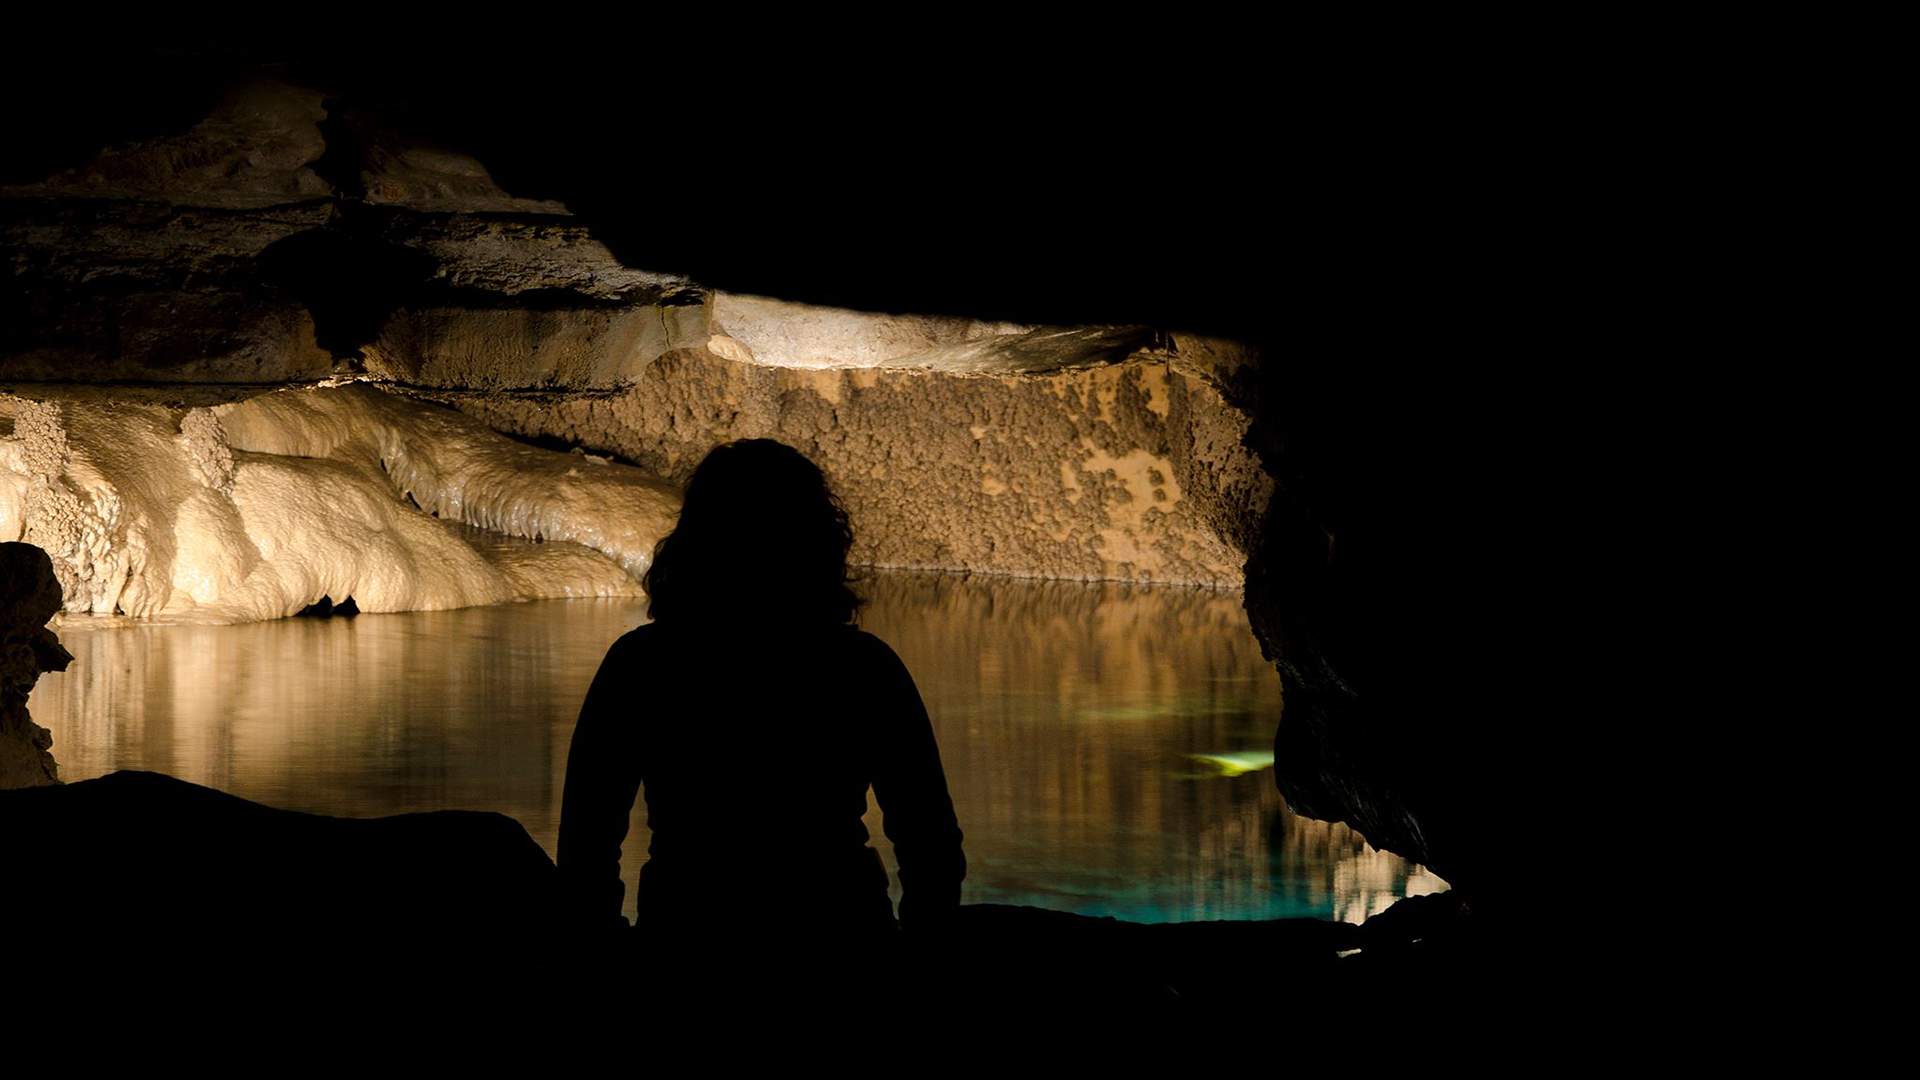 Una aventura a lo Indiana Jones: cómo son las misteriosas cuevas con piscinas subterráneas 